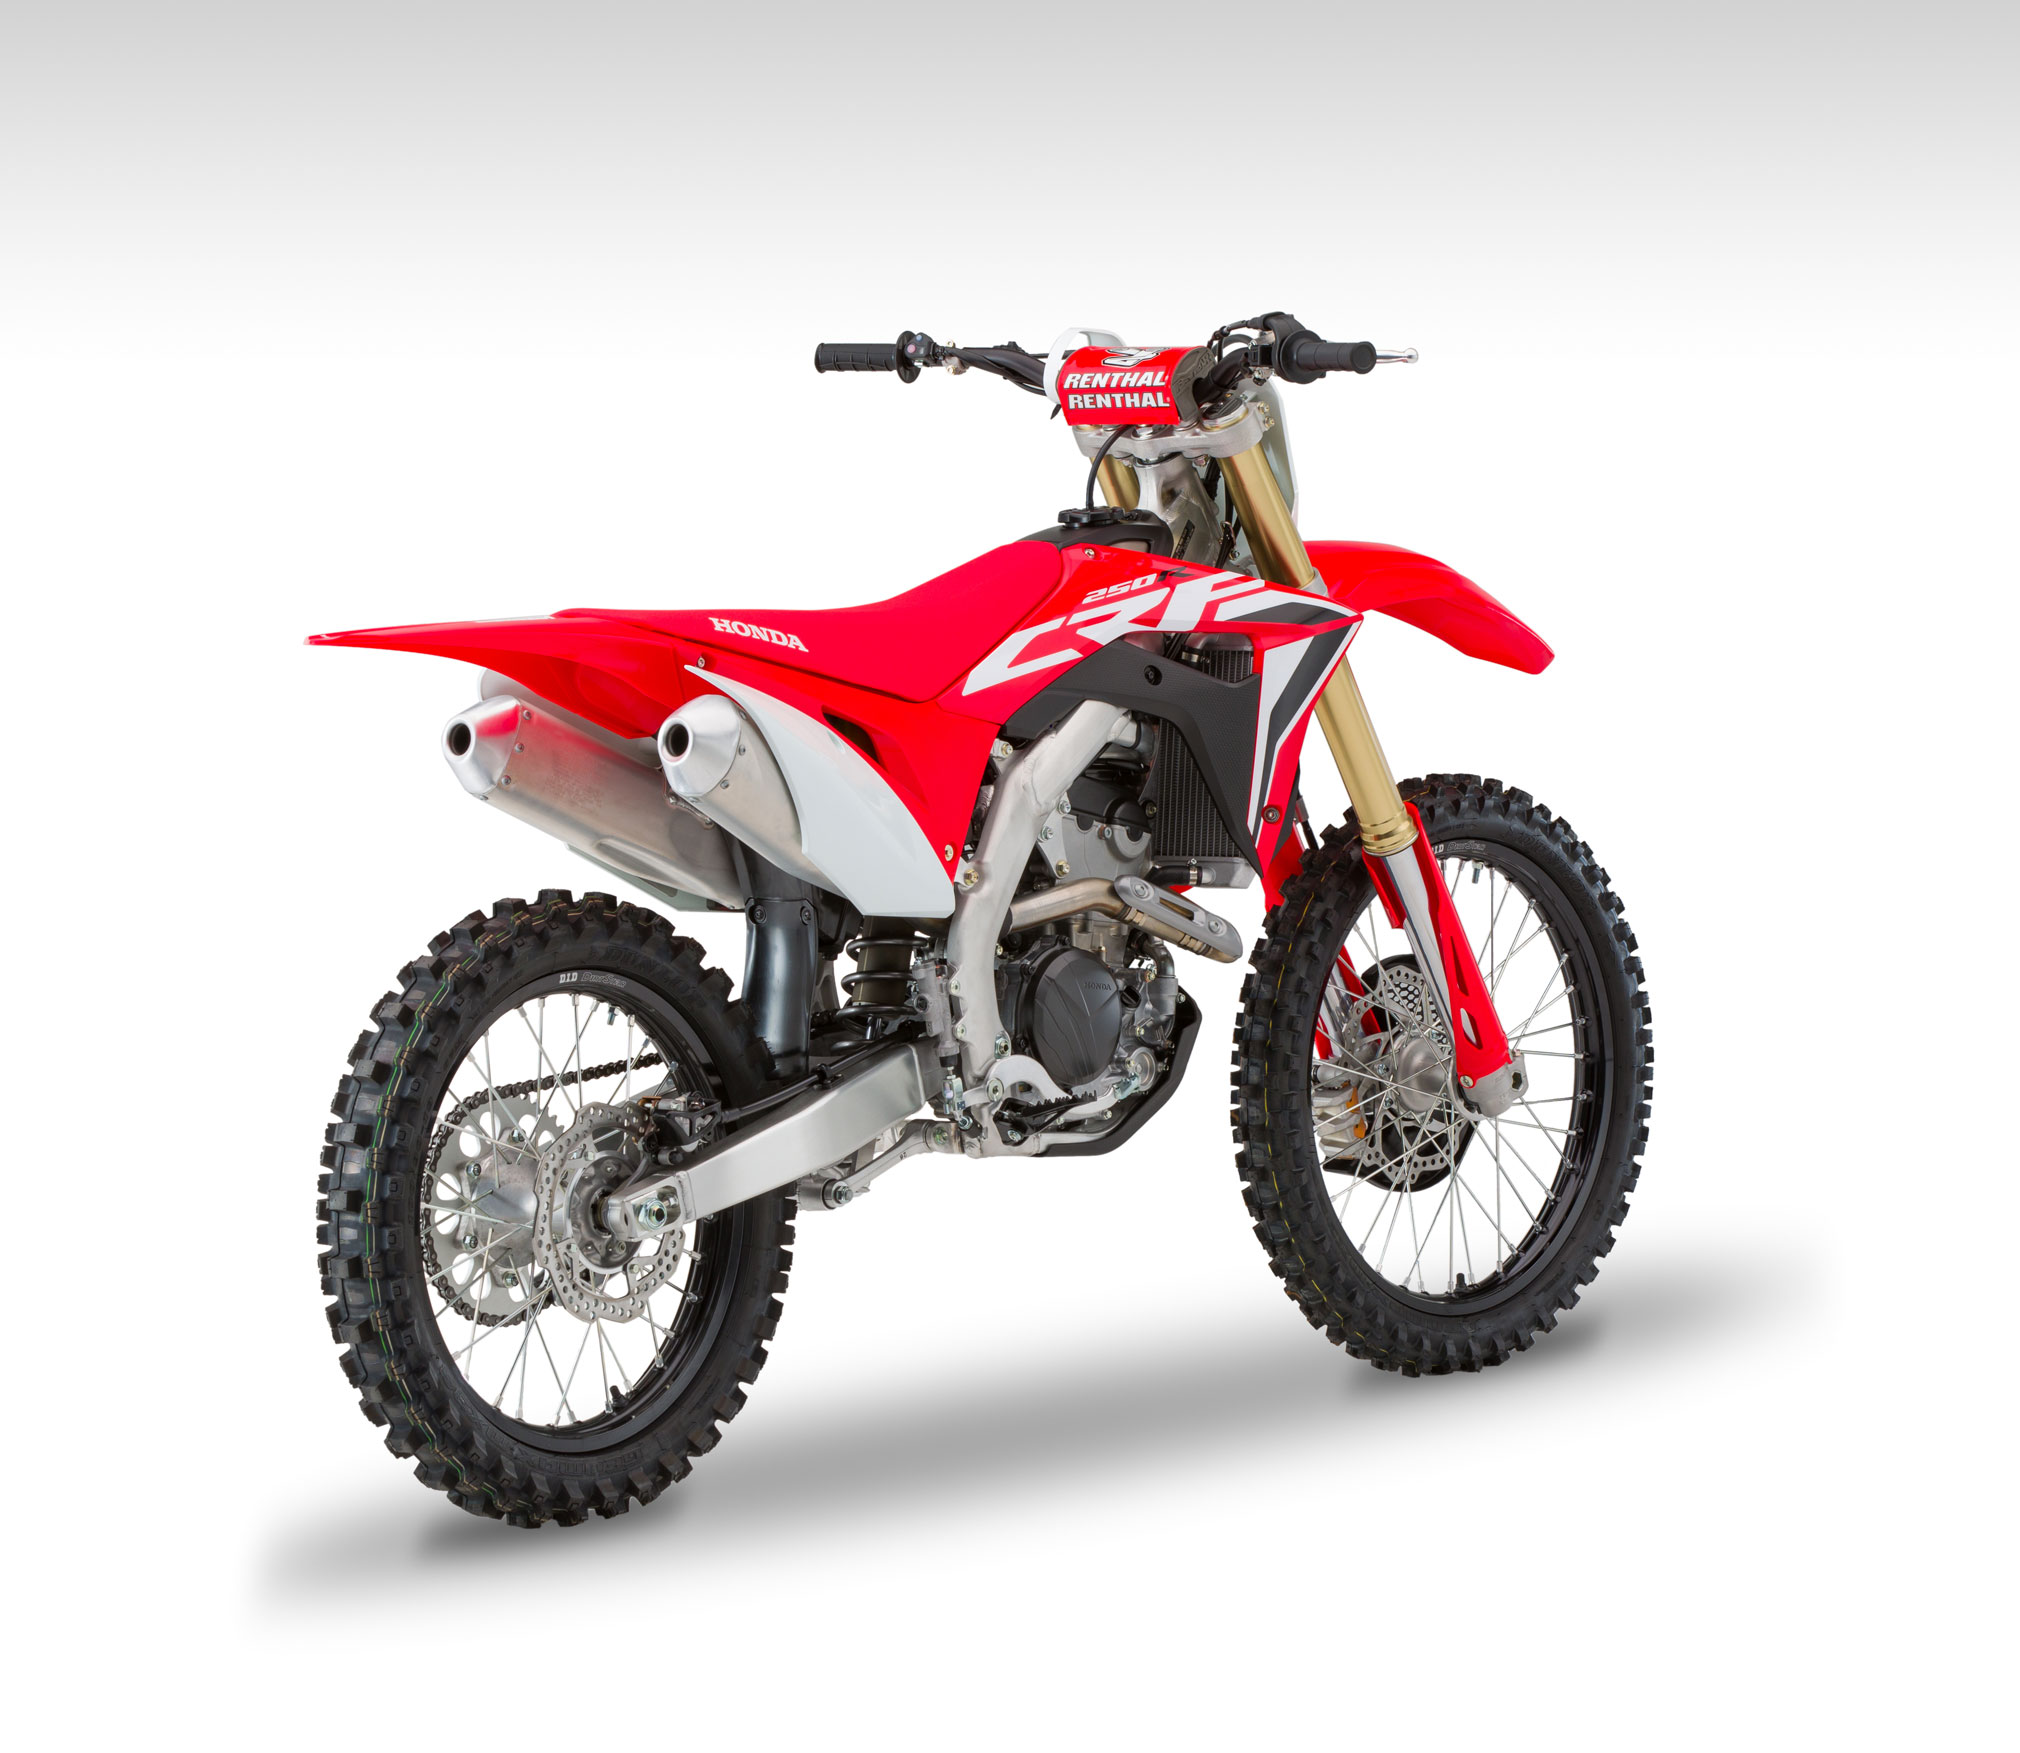 2020 Honda CRF250R Guide • Total Motorcycle